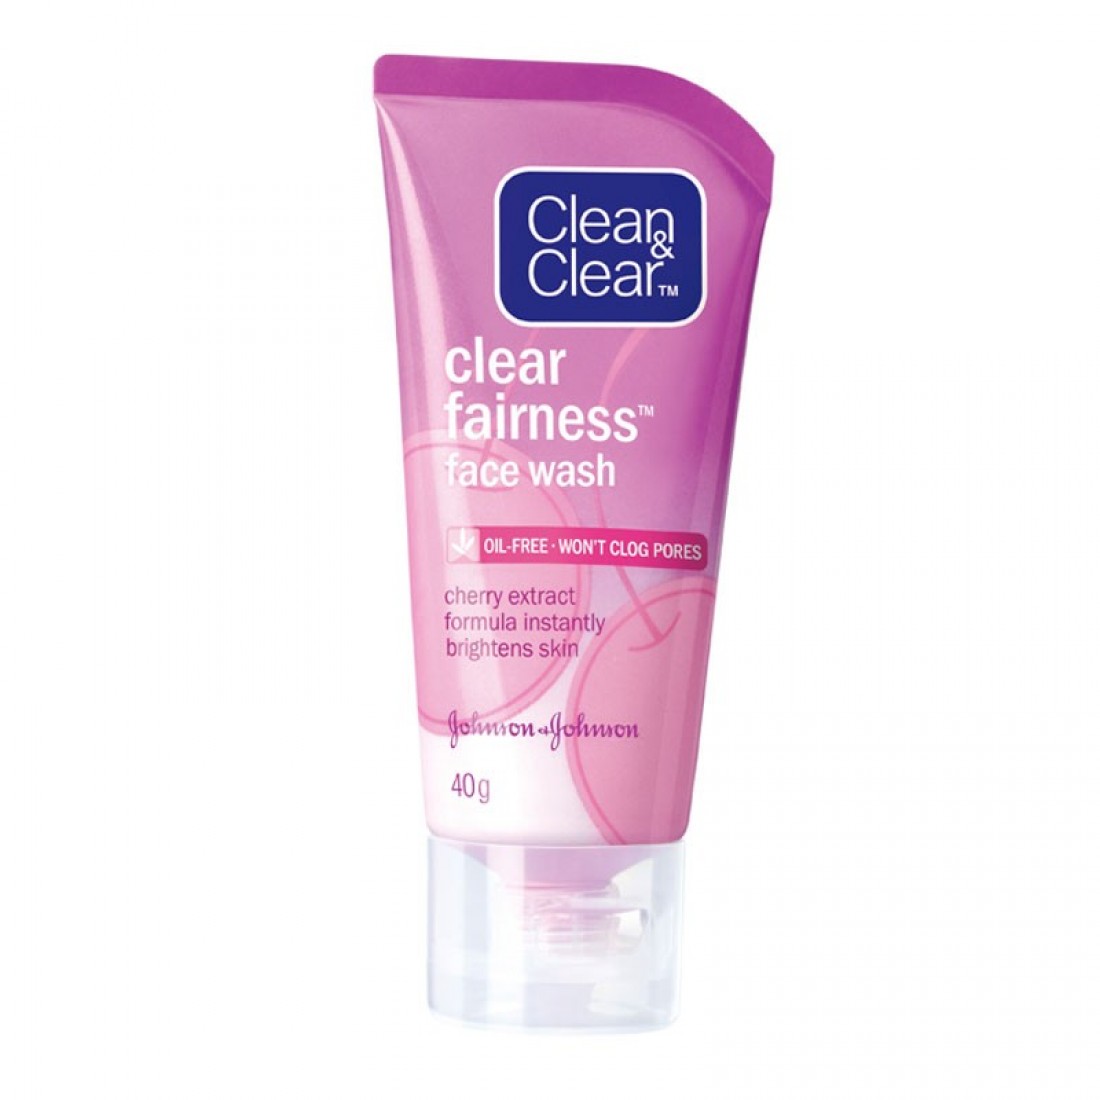 Clean & Clear Fairness Face Wash- 80g.